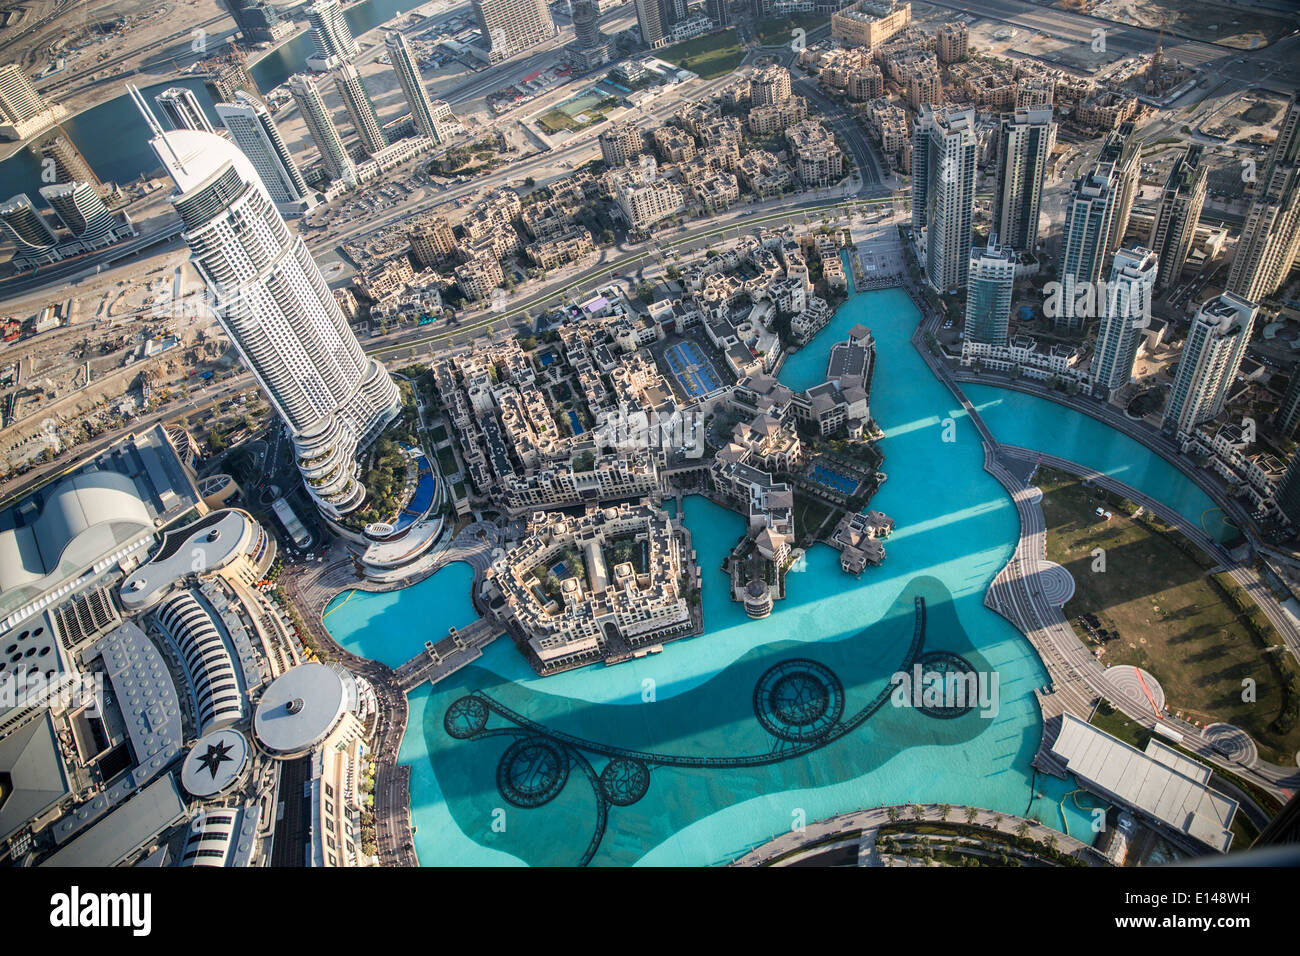 Vereinigte Arabische Emirate, Dubai, Souk Al Bahar. Blick vom Burj Khalifa, das höchste Gebäude der Welt Stockfoto